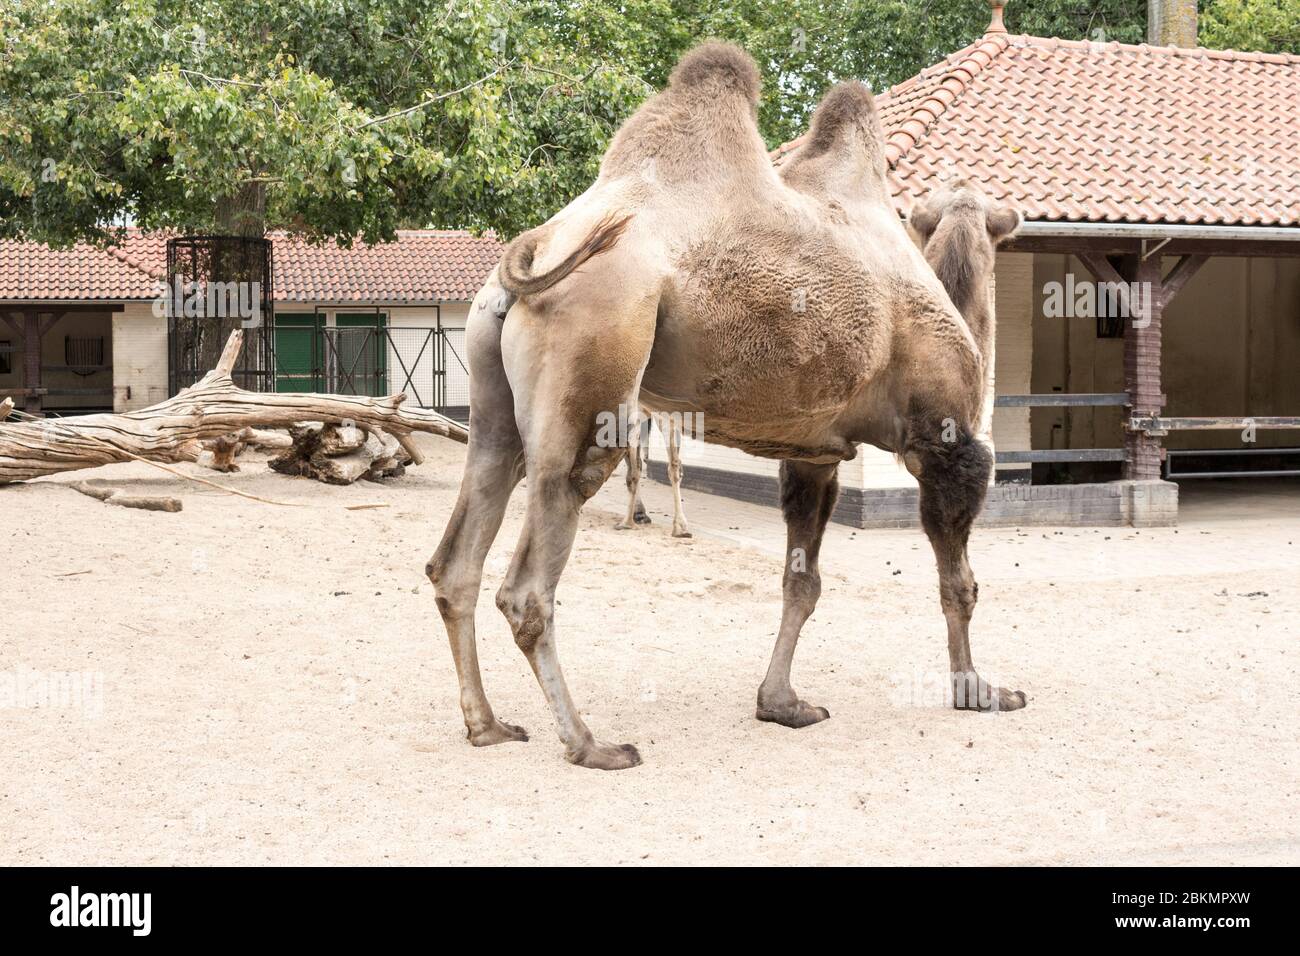 Eine majestätische Kreatur im Ausland: Das Leben und die Fürsorge eines Kamels in einem niederländischen Zoo Niederlande liegt in einem Zoo, der eine Vielzahl von Tieren beherbergt Stockfoto